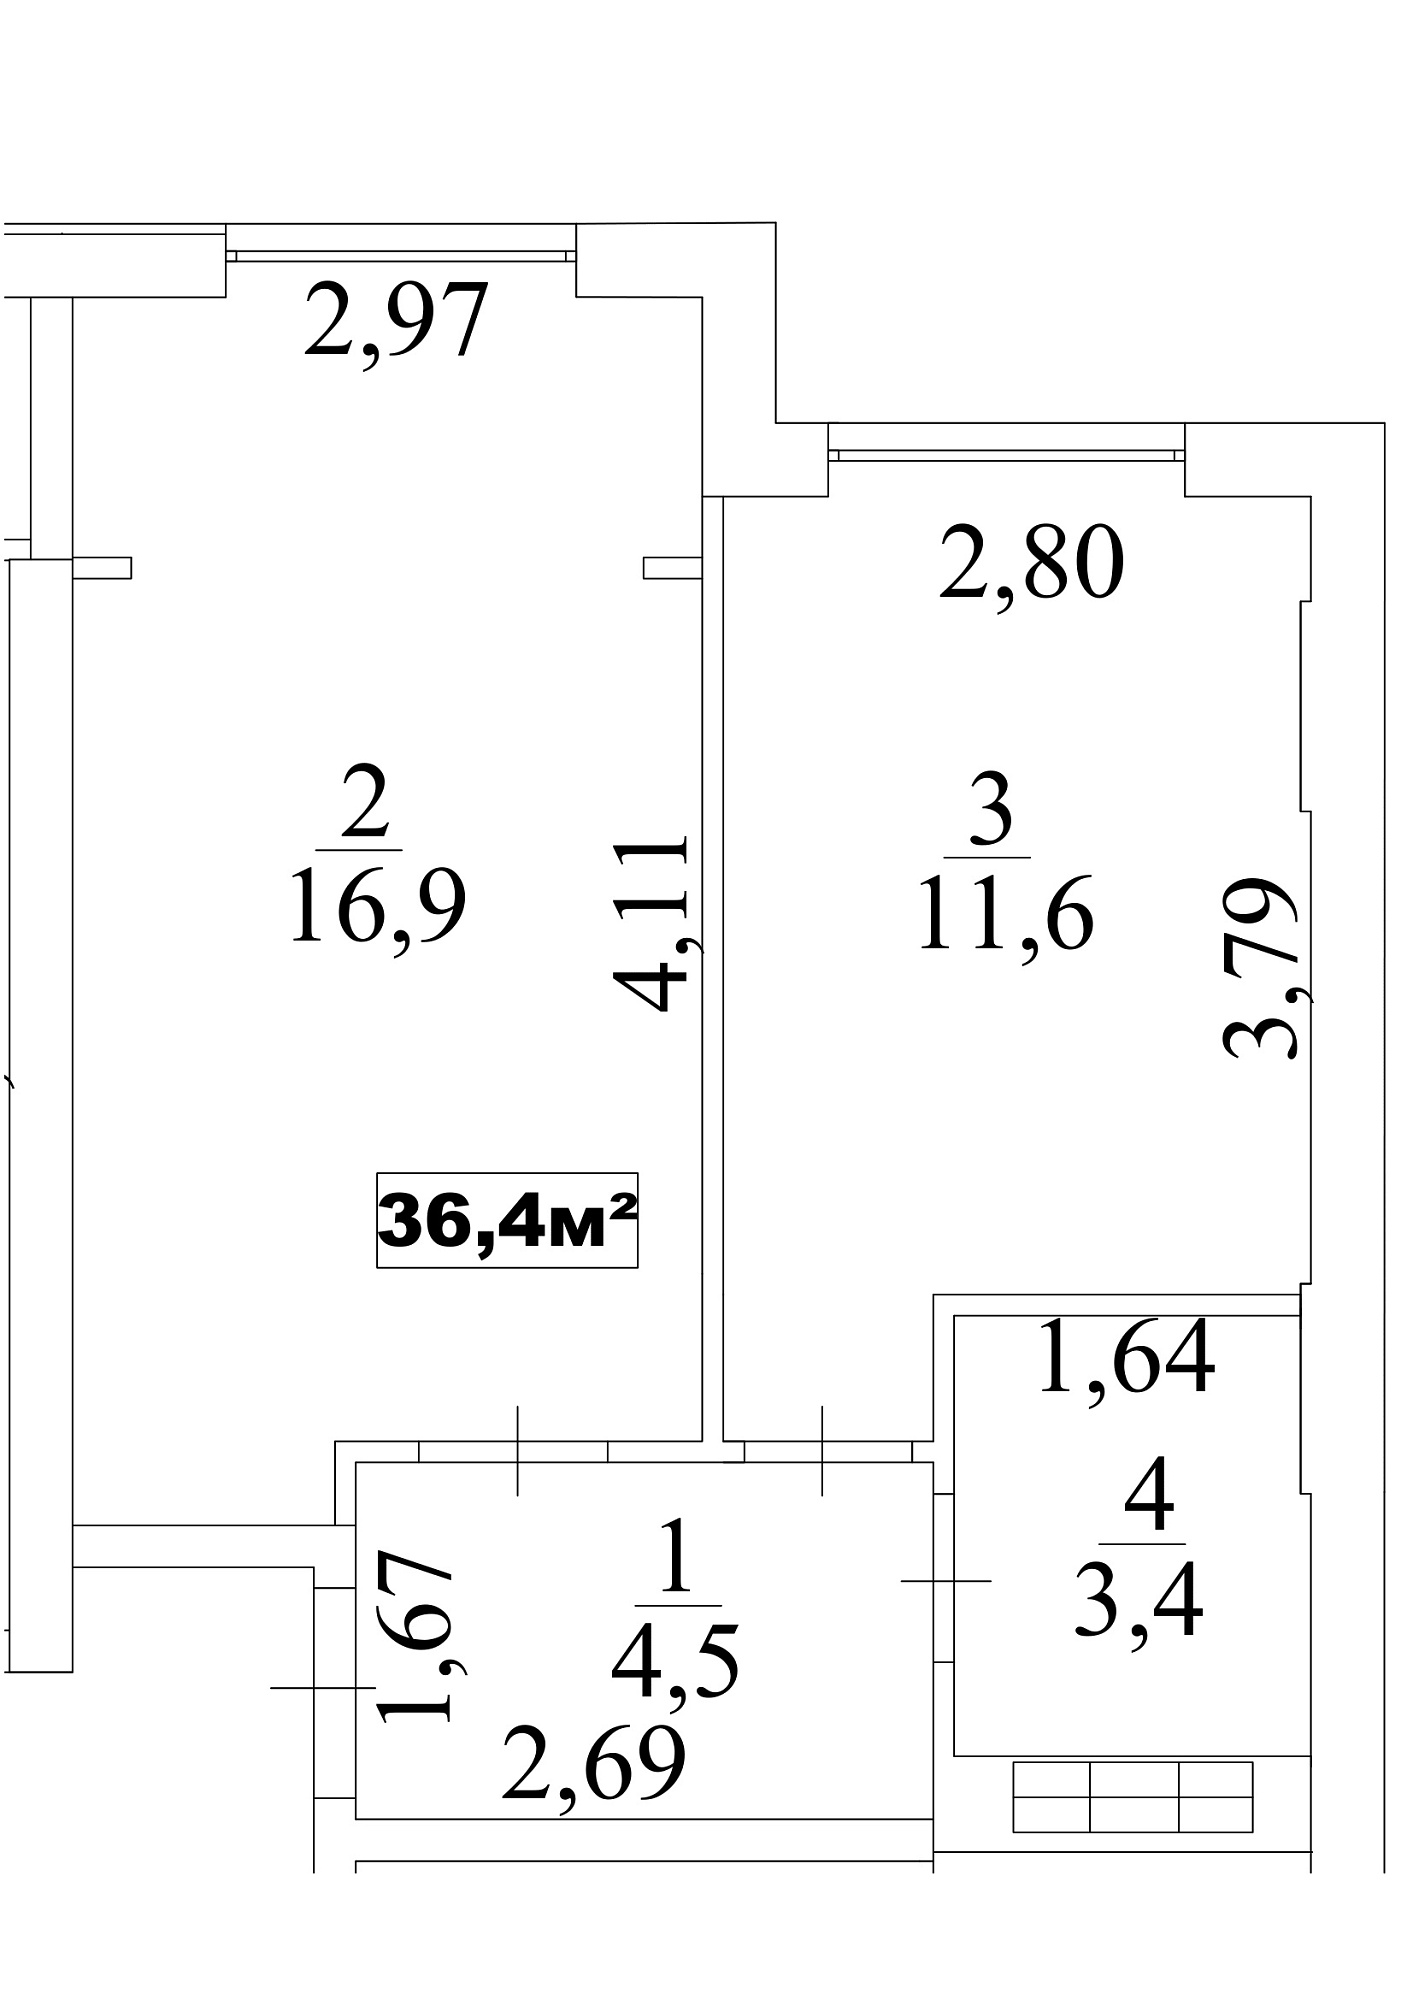 Планировка 1-к квартира площей 36.4м2, AB-10-05/0043б.